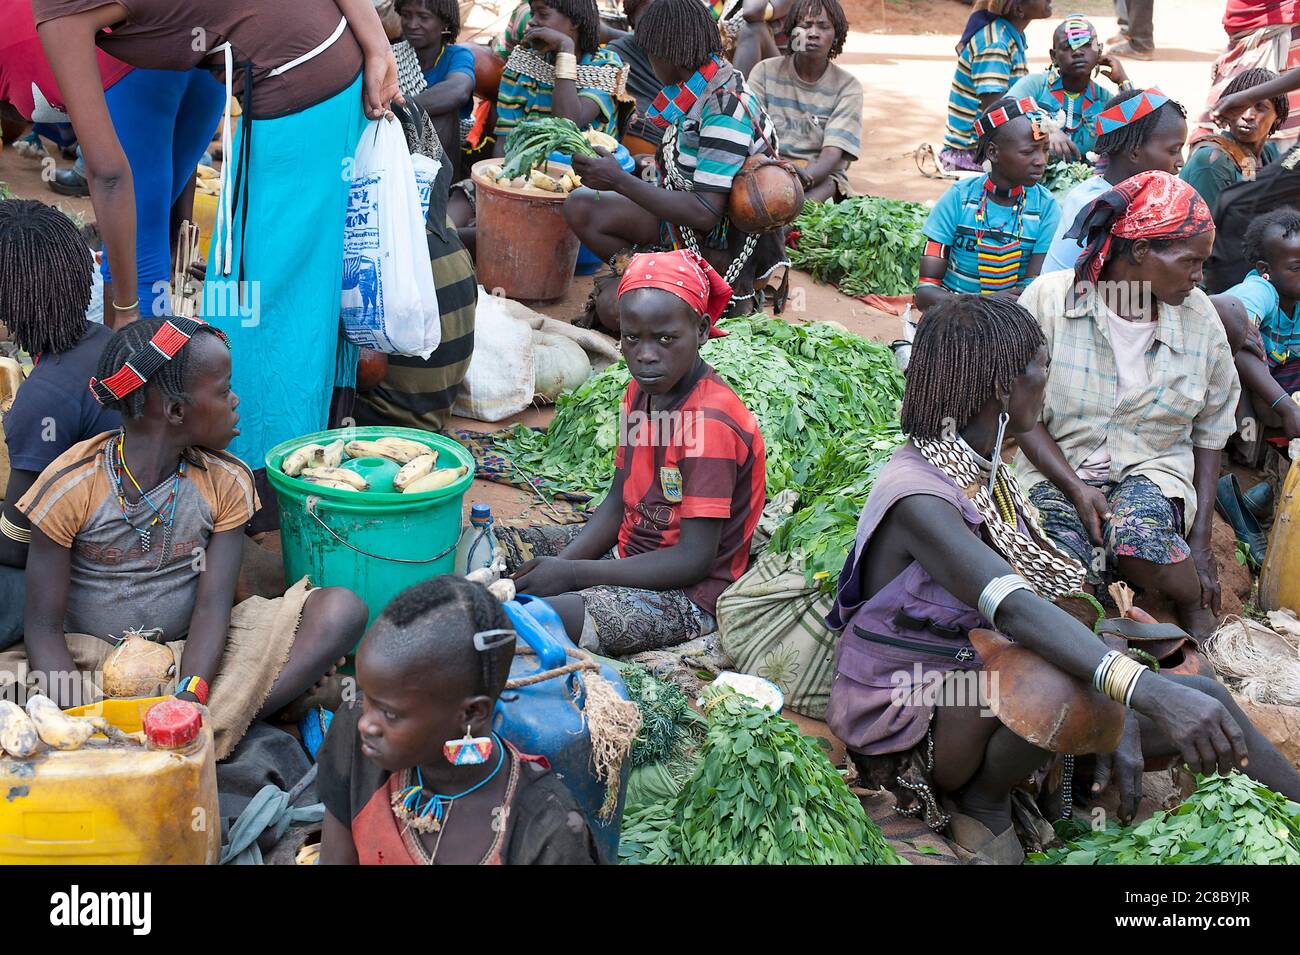 Turmi, Éthiopie. Afrique, janvier 3. 2013:: Un groupe de femmes qui vendent des légumes et des aliments sur un marché de Turmi Banque D'Images